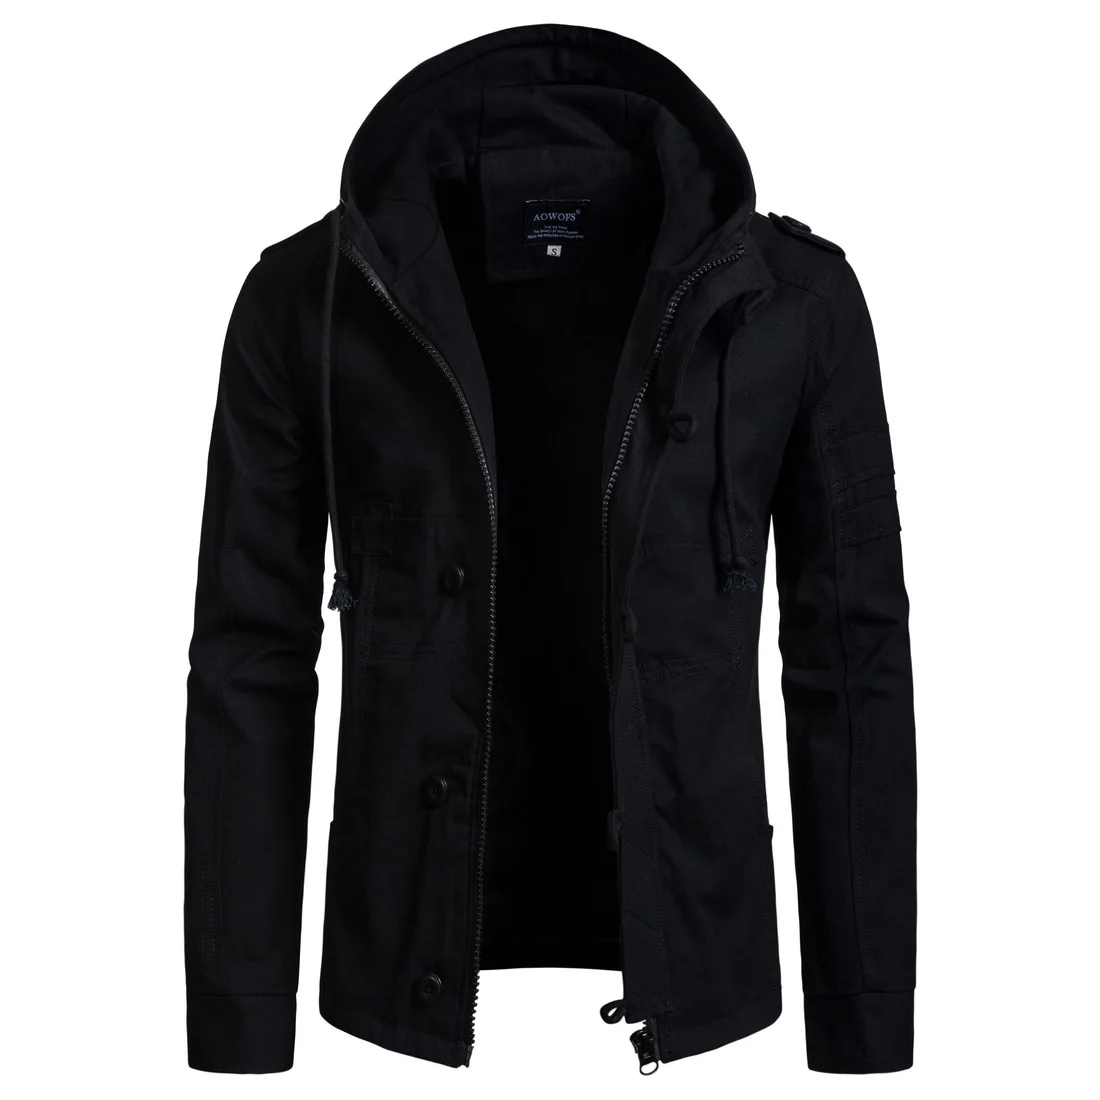 BYTHAWXLLA Лидер продаж Для мужчин Зимние флисовые куртки теплое пальто с капюшоном Термальность плотная верхняя одежда мужской пиджак Для мужчин s брендовая одежда W2206